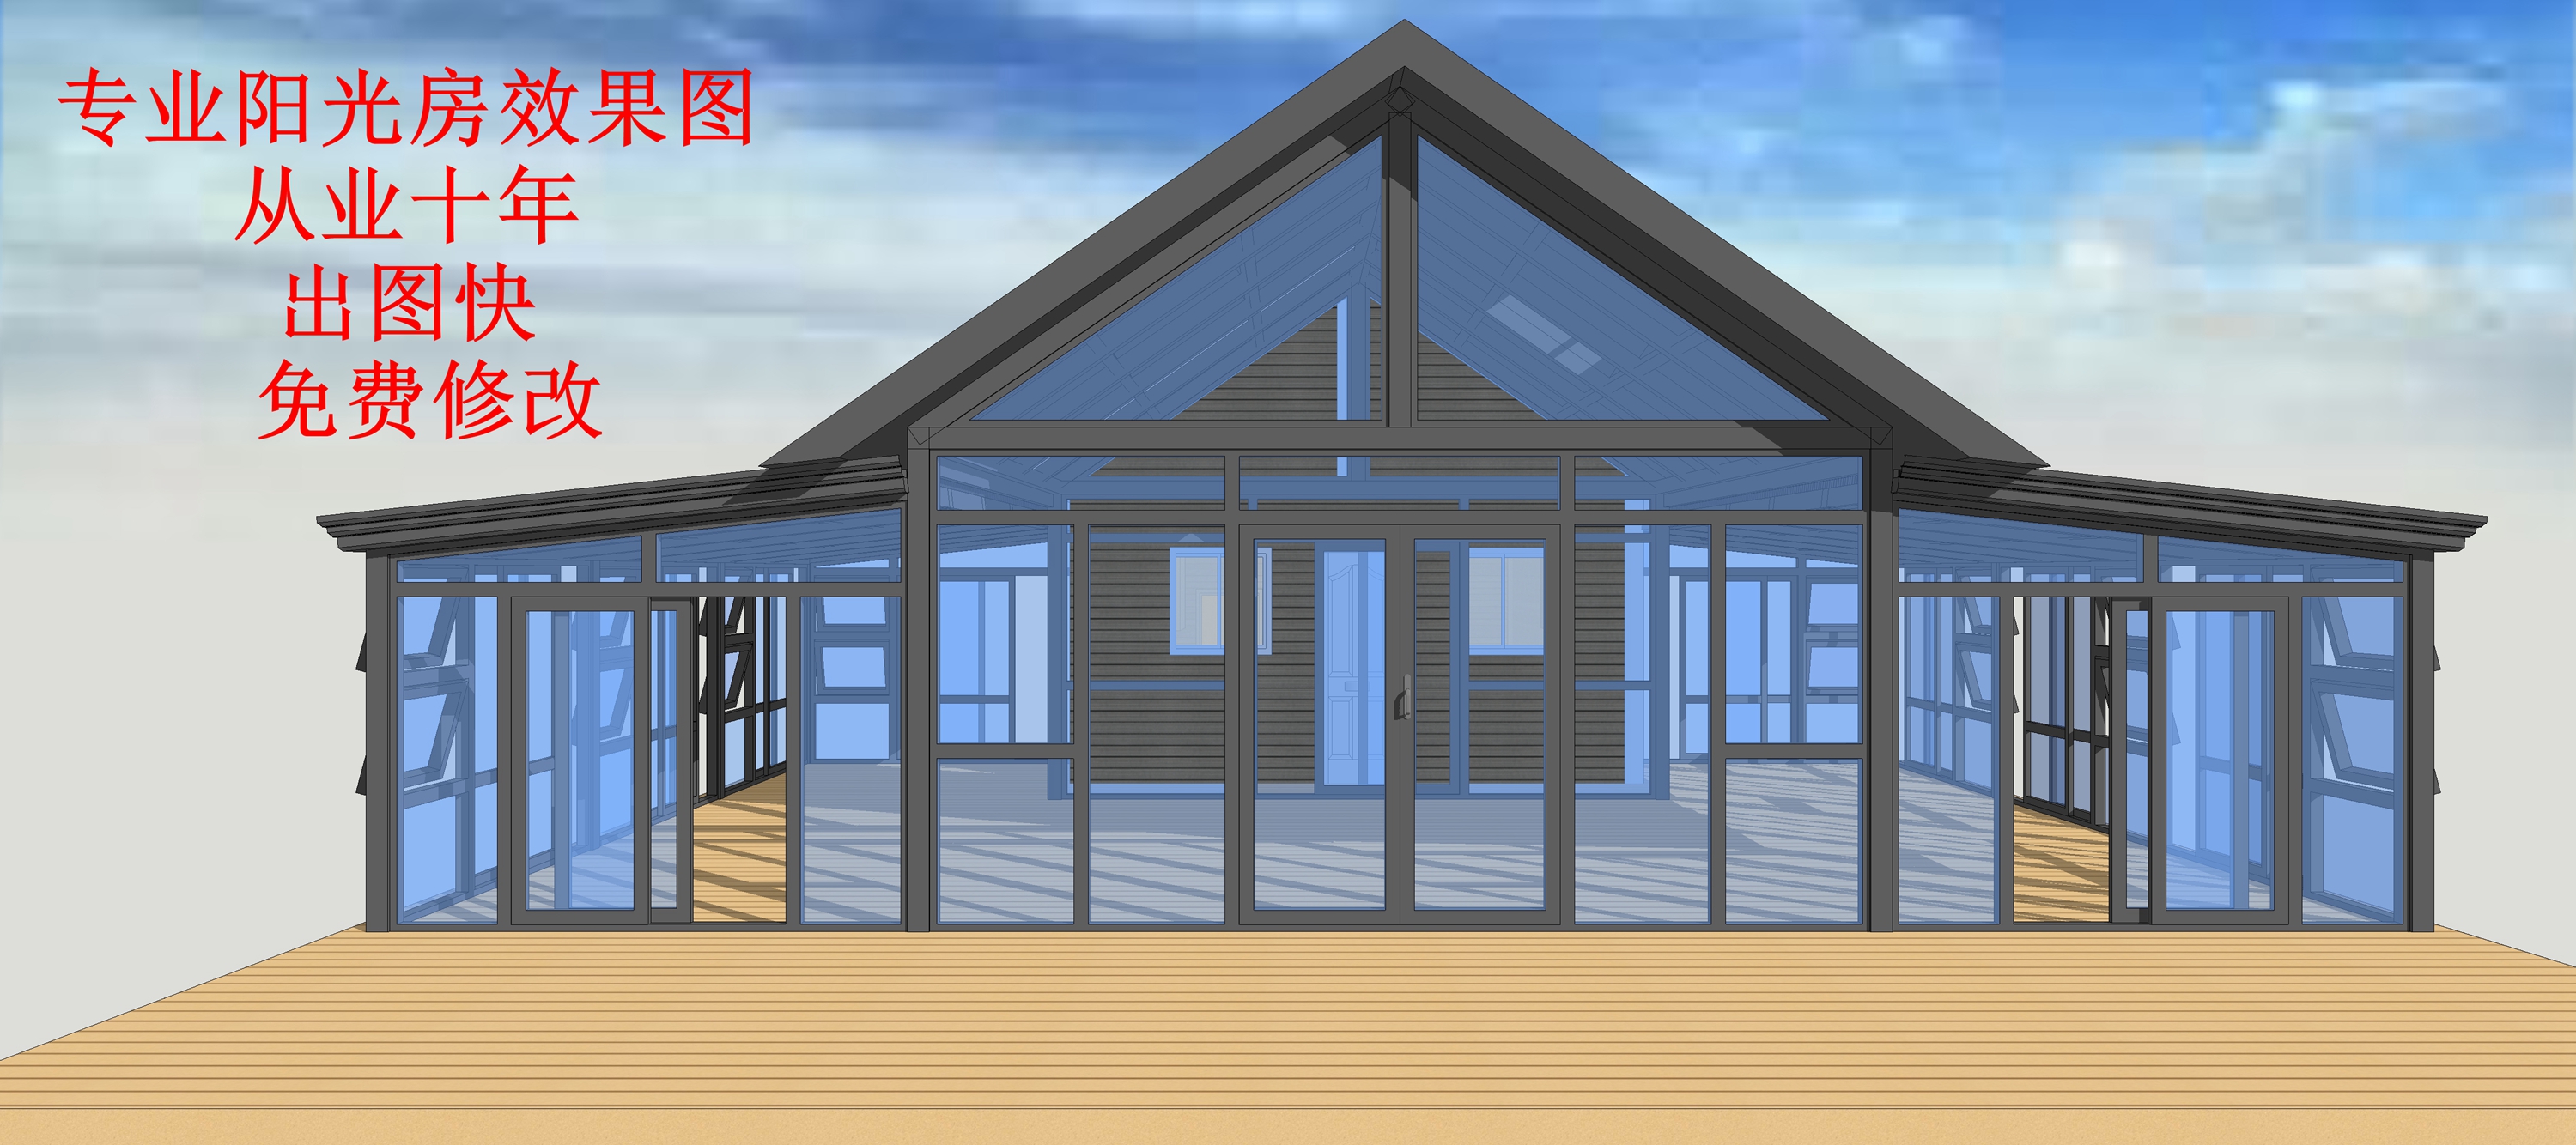 专业阳光房设计3D效果图SU建模人字顶斜坡顶前弧形雨棚葡萄架门窗